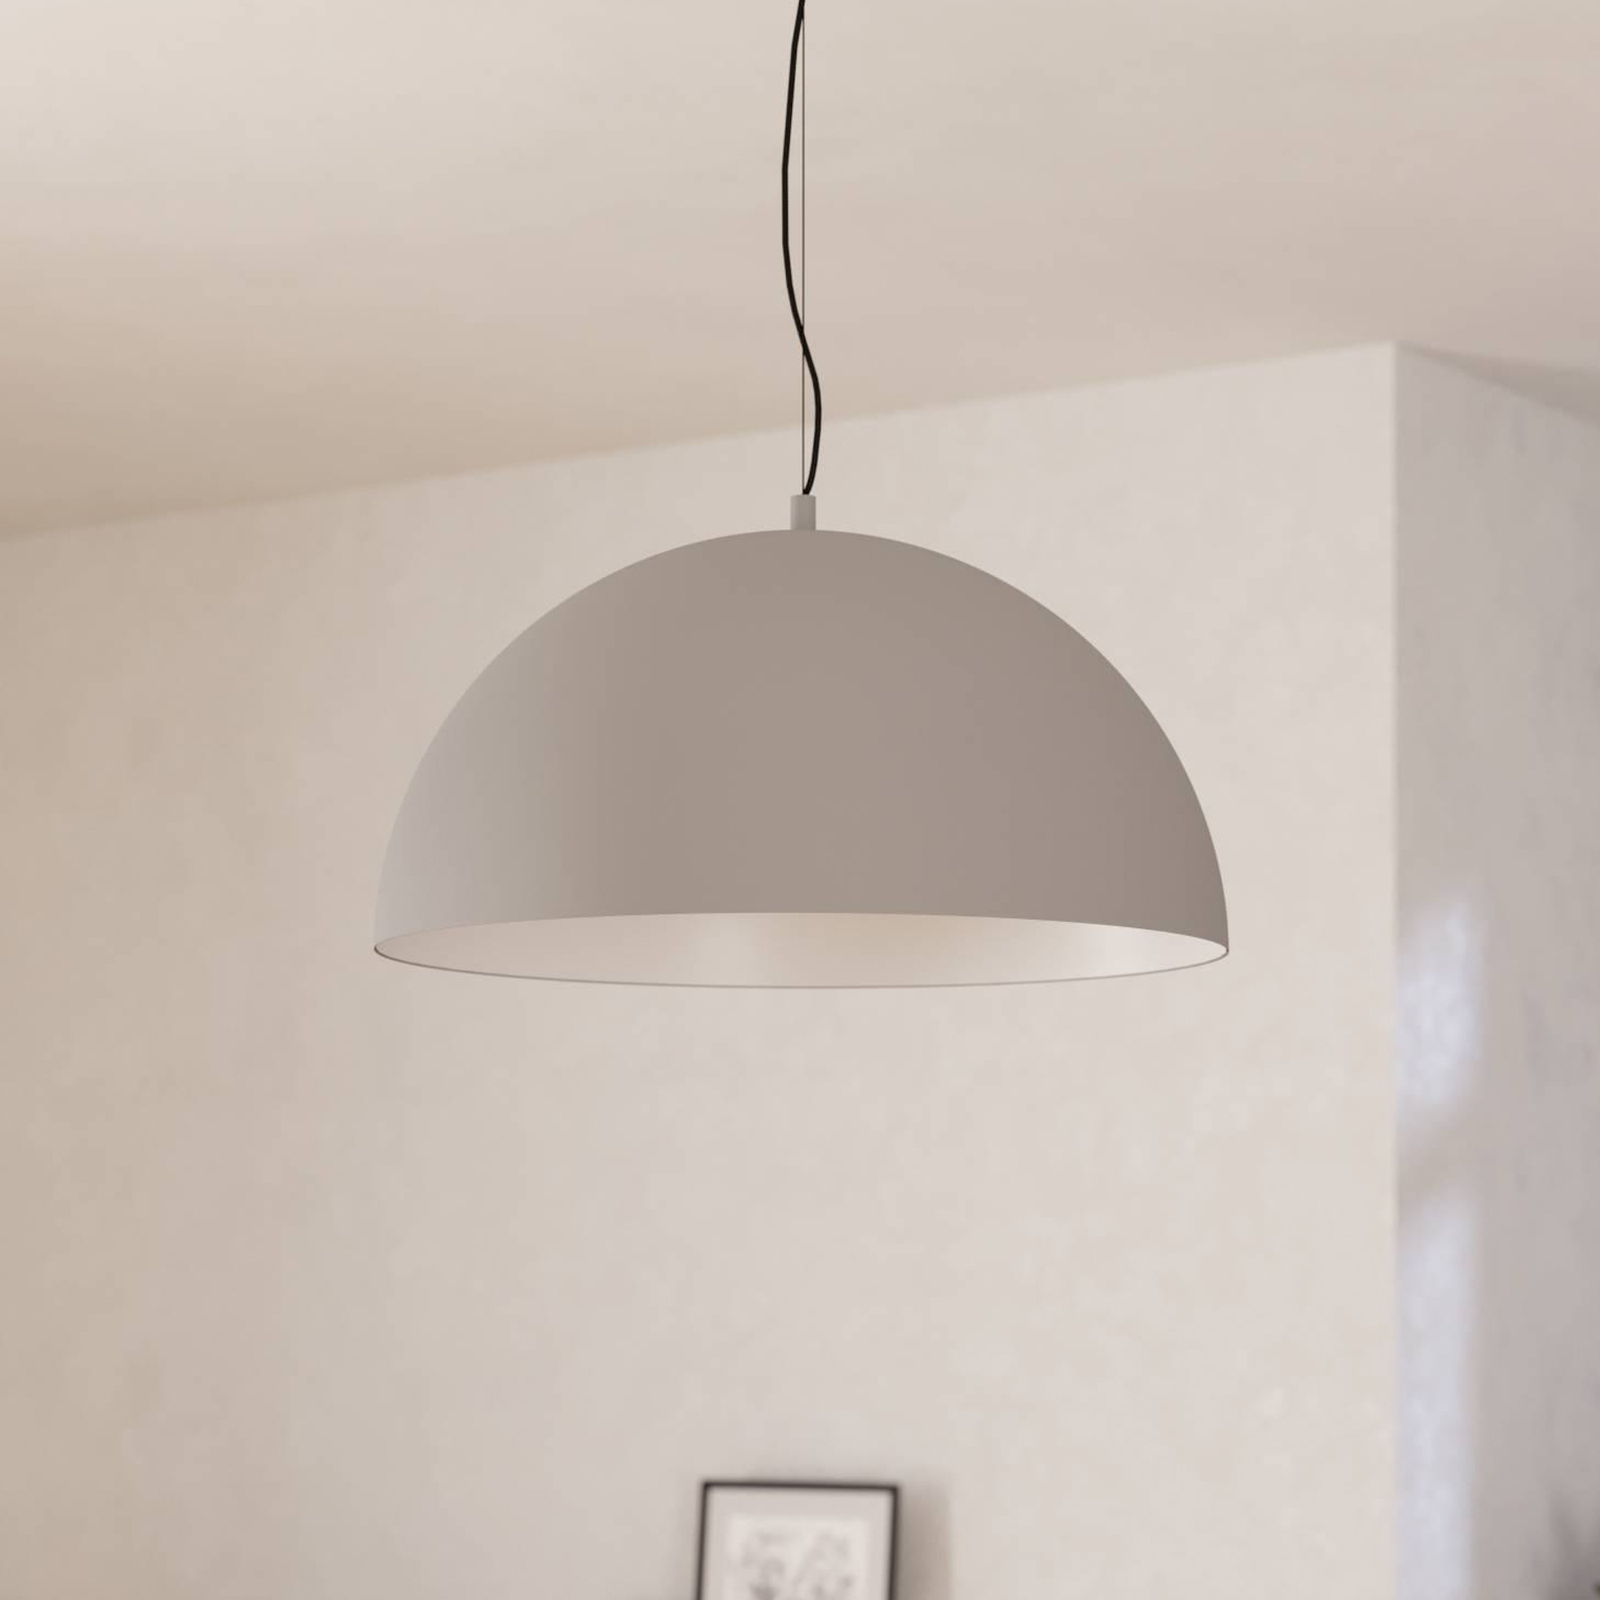 Gaetano 1 pendant light, Ø 53 cm, grey/white, steel